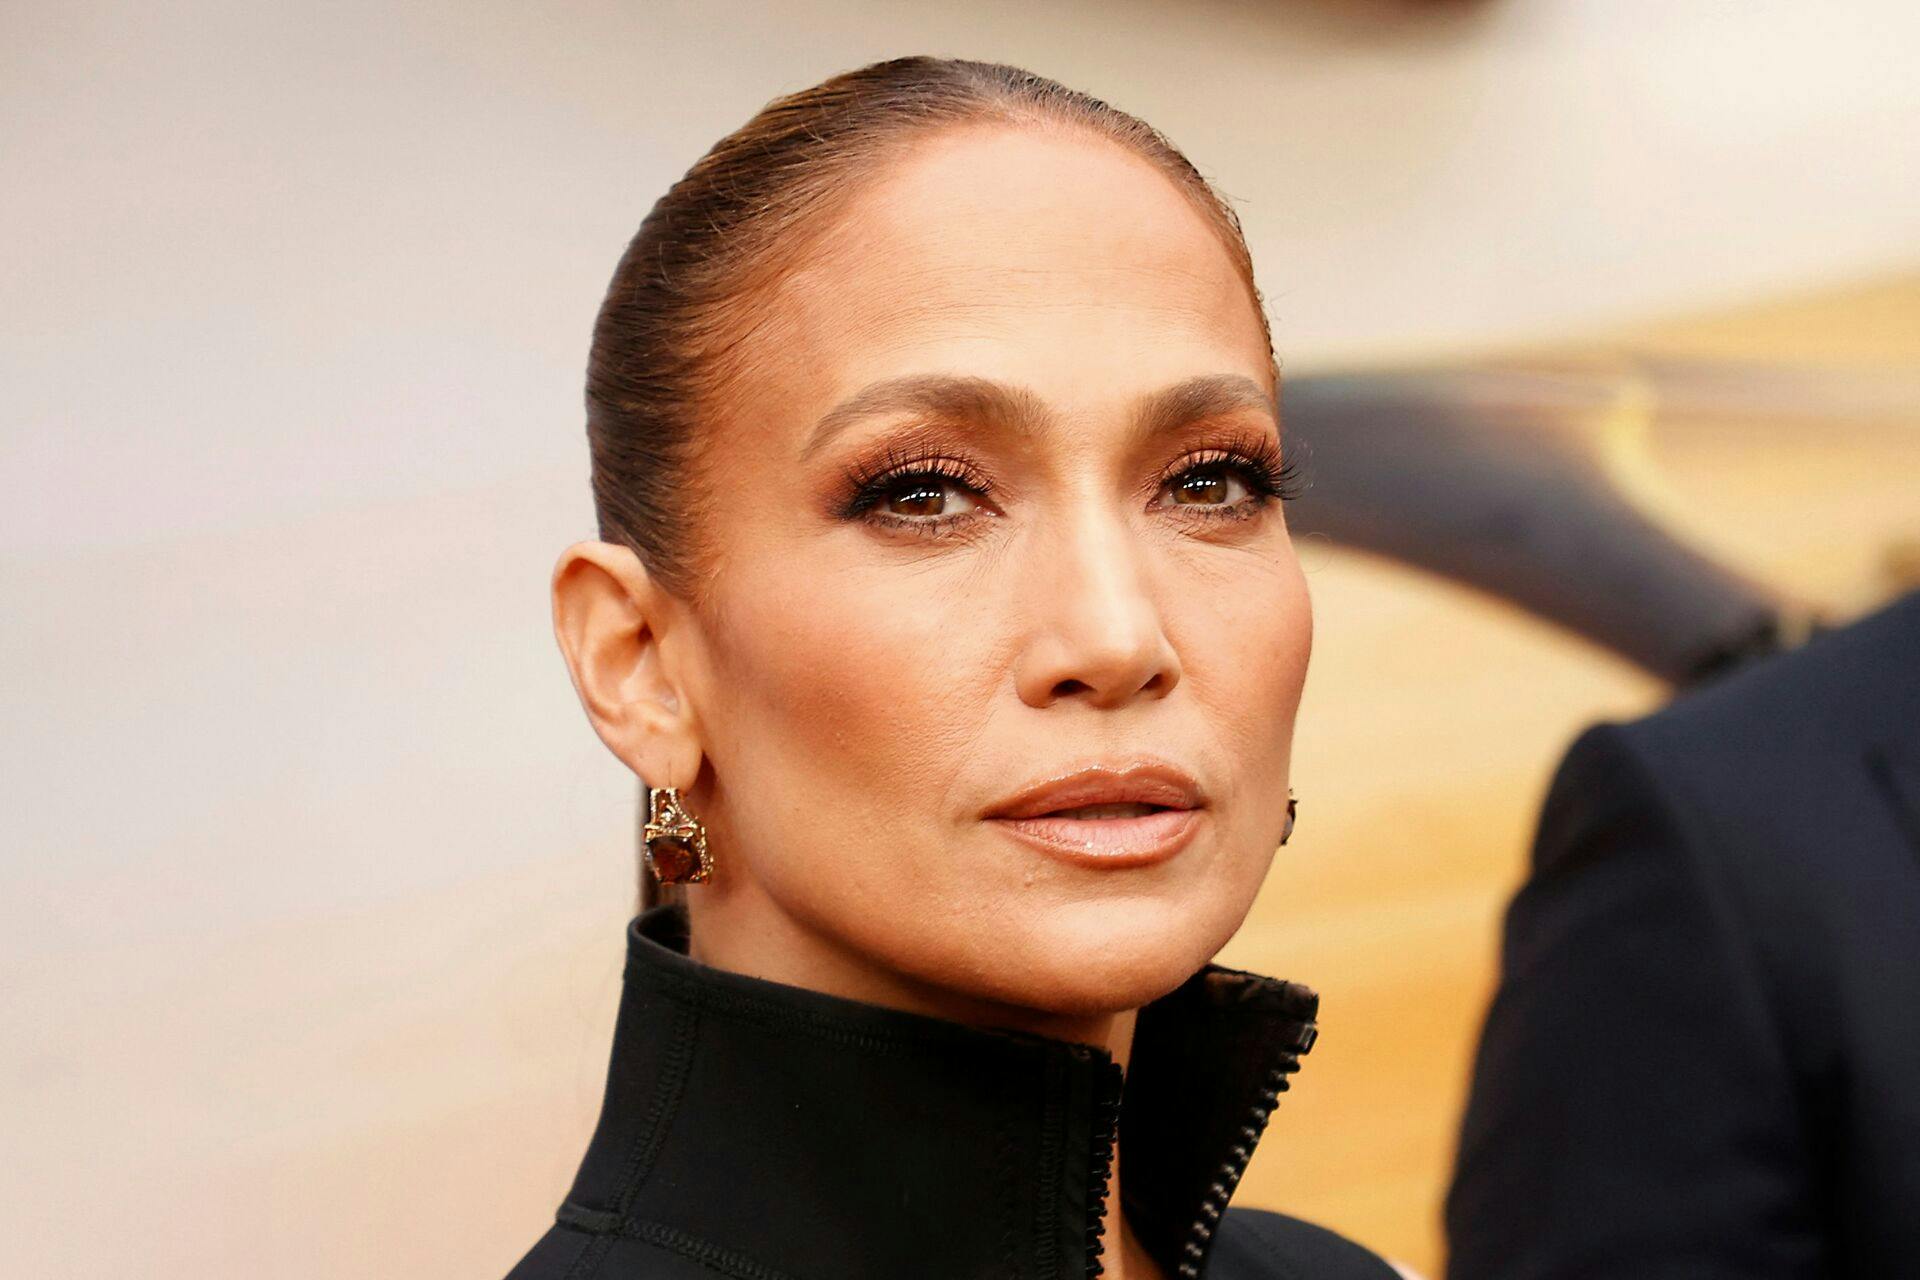 Den amerikanske popdiva og skuespiller Jennifer Lopez beviser endnu en gang, at alder i den grad bare er et tal.